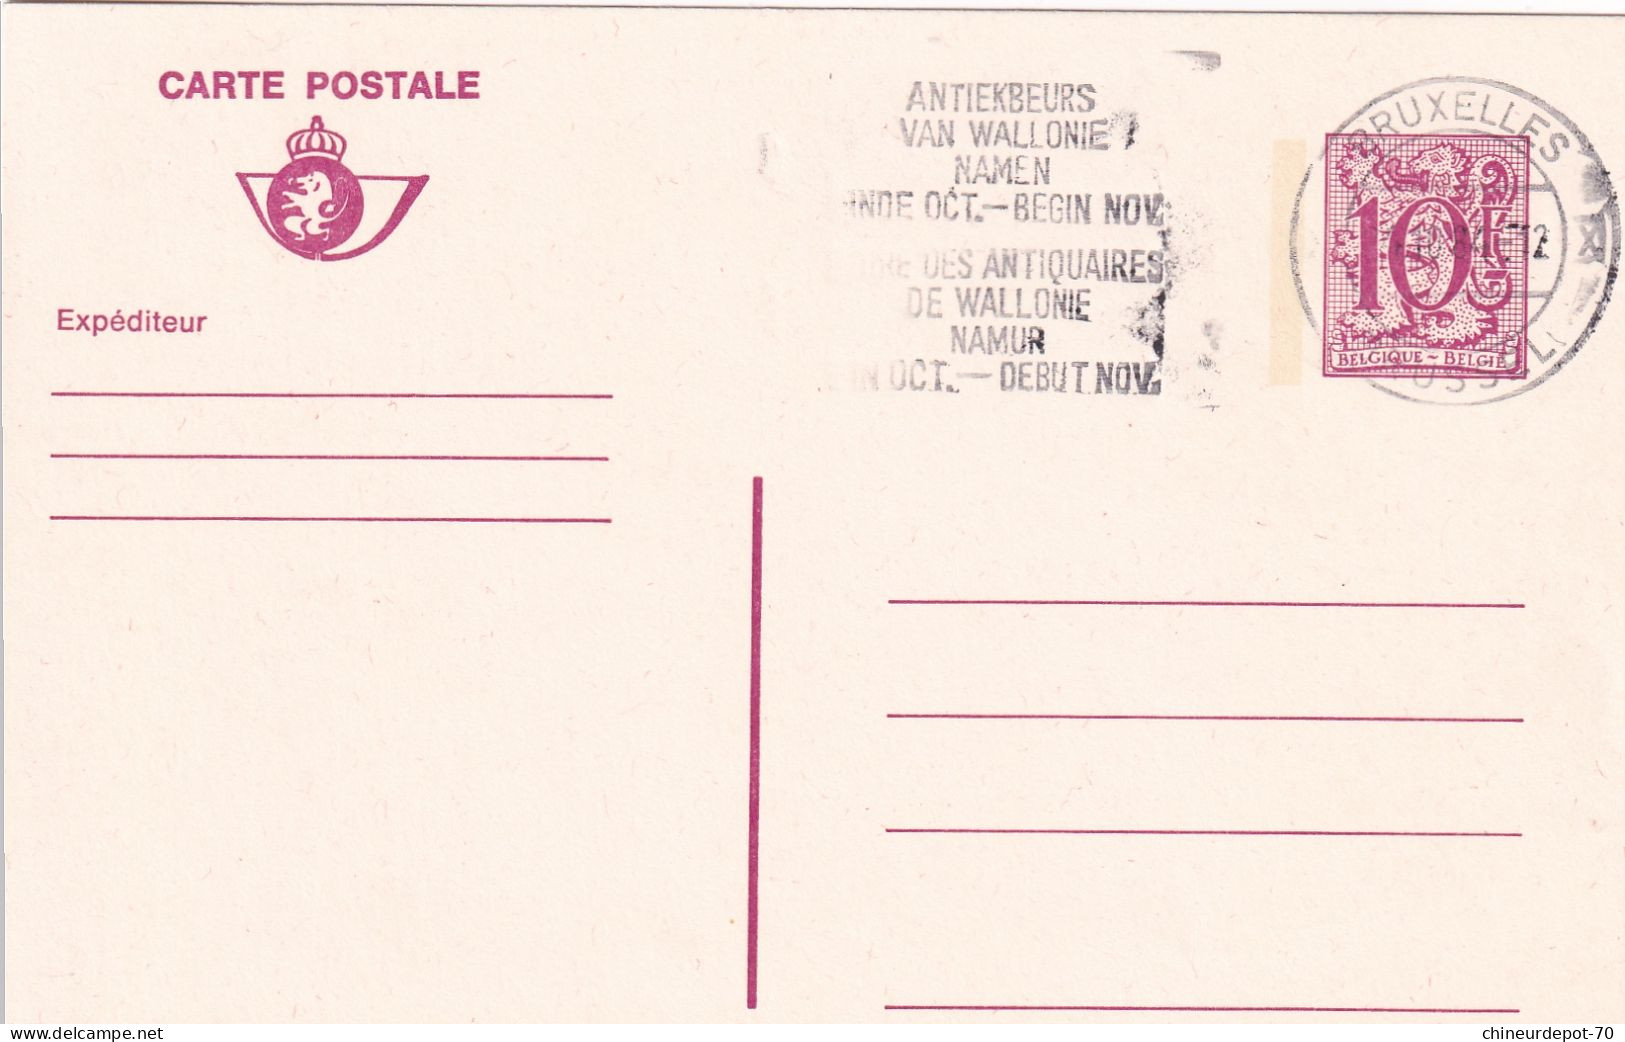 Lettres & Documents  Belgique België Belgium 1984 - Cartas & Documentos